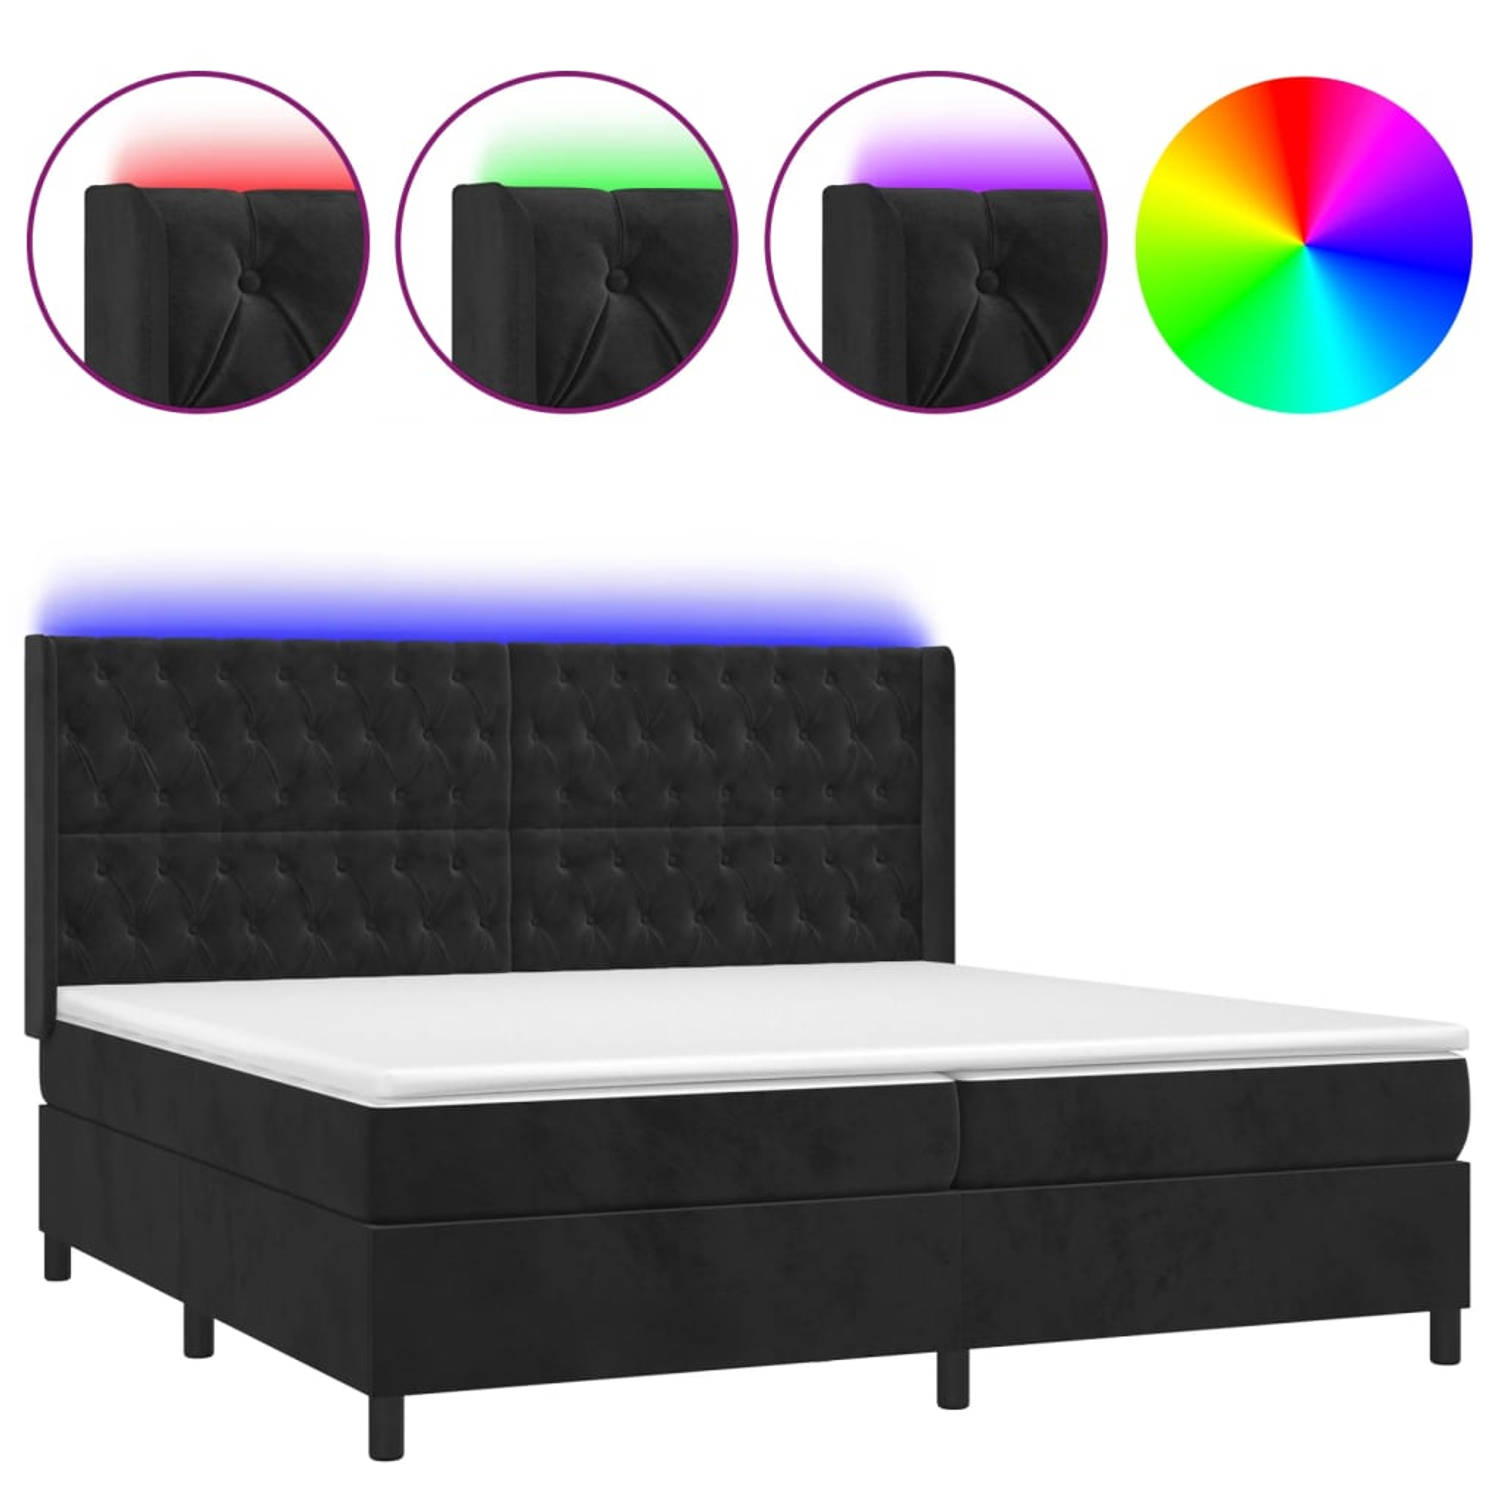 The Living Store Boxspring - Zacht fluweel - Praktisch hoofdbord - Kleurrijke LED-verlichting - Pocketvering matras - Huidvriendelijk topmatras - Compleet bed